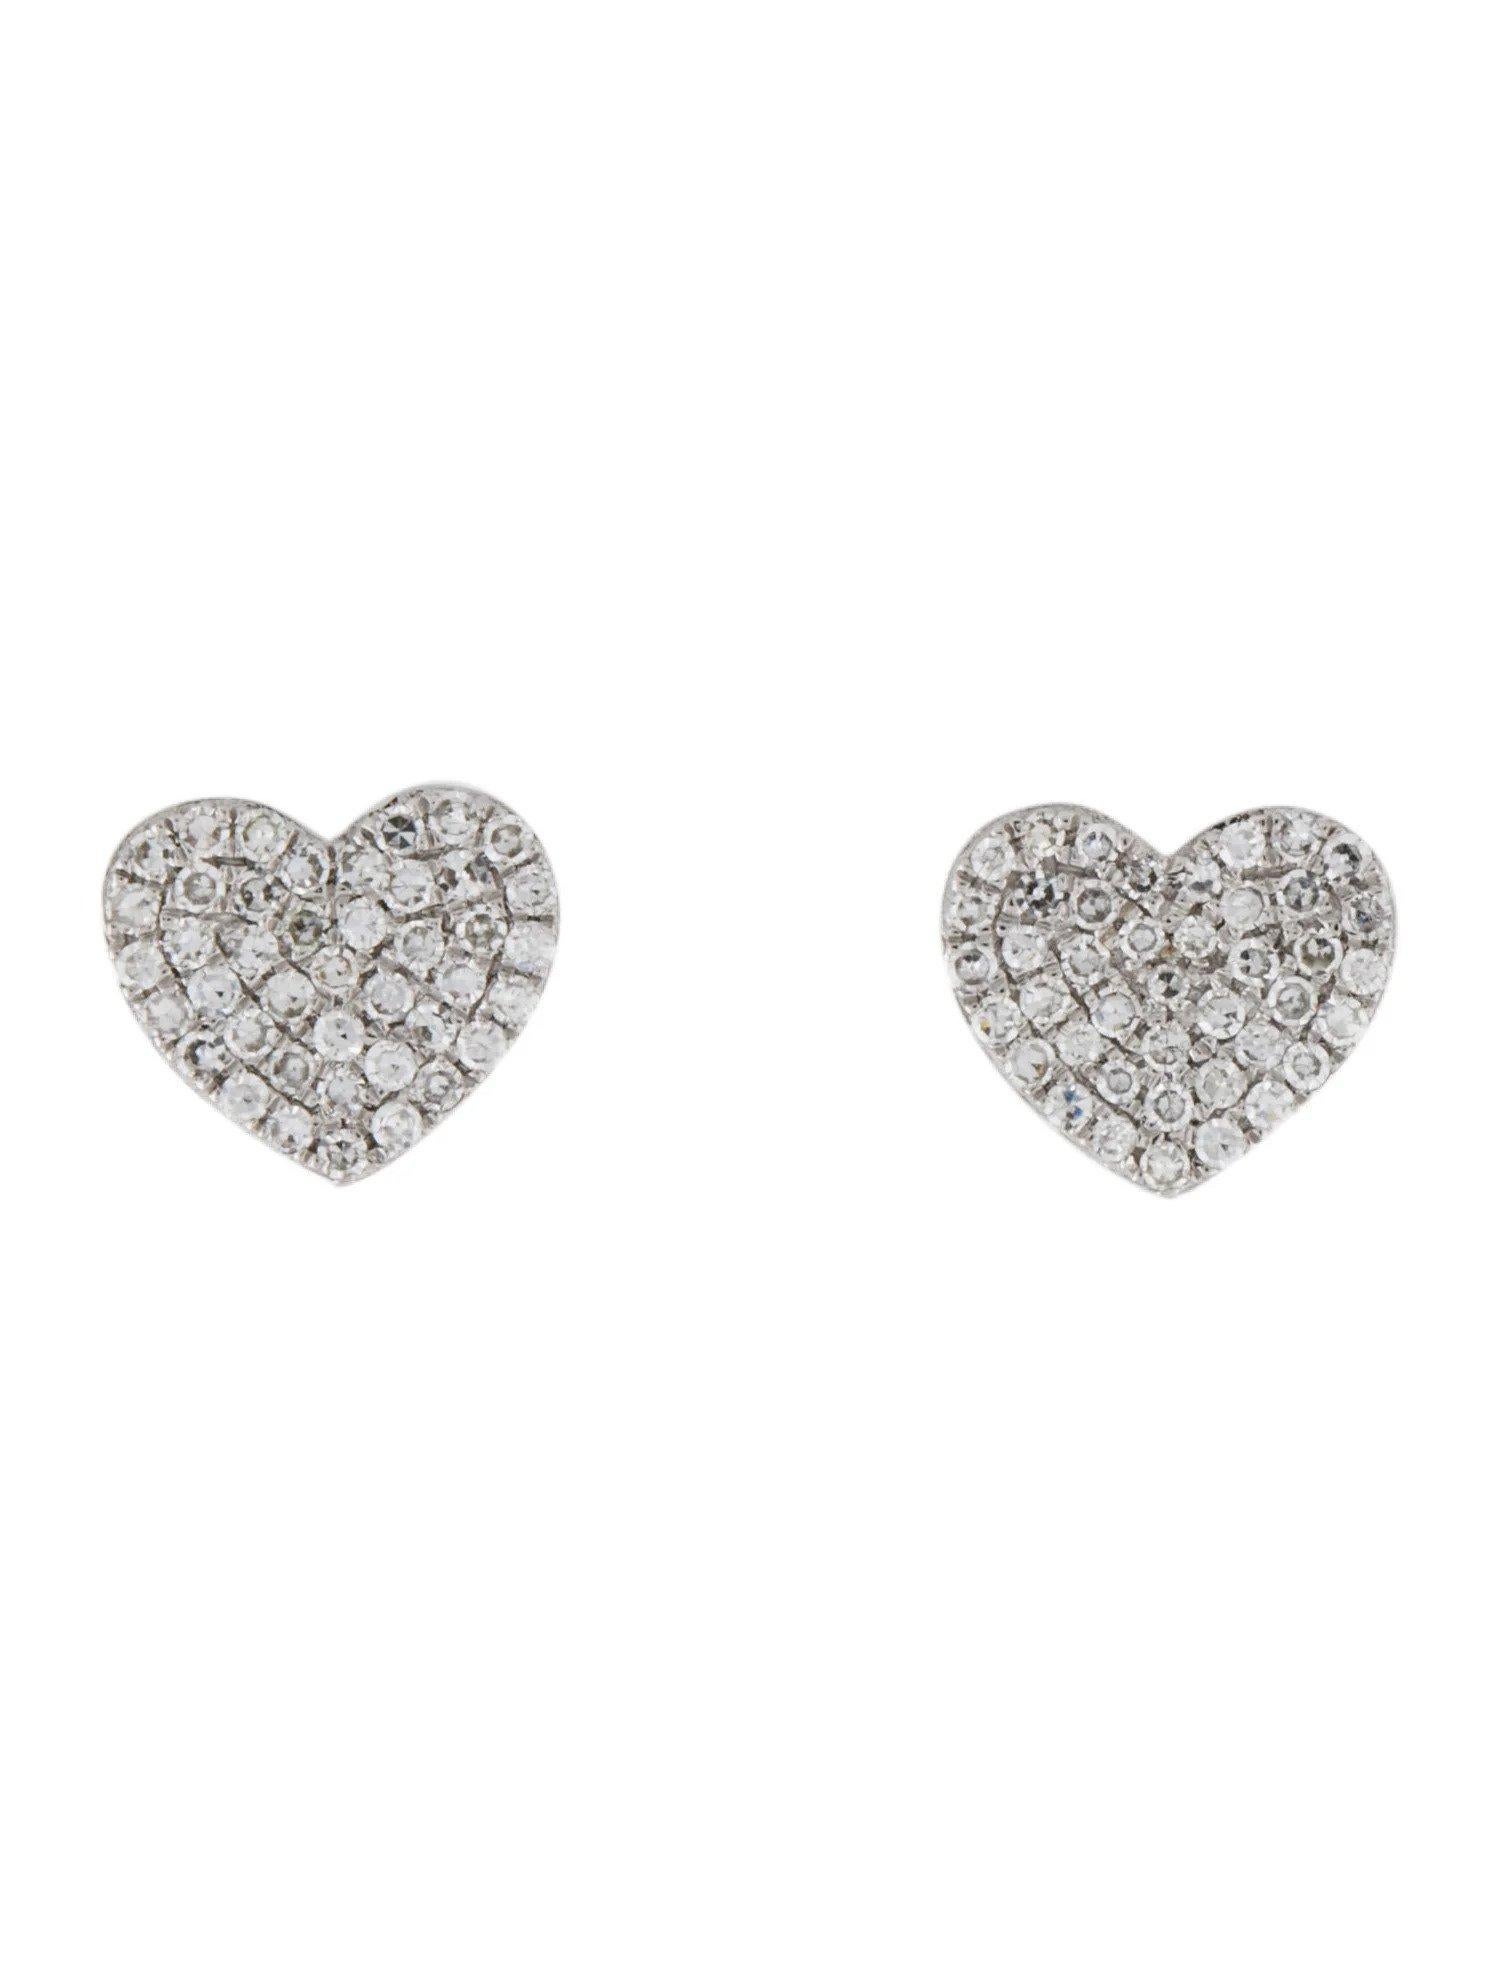 Ces boucles d'oreilles en diamant sont un accessoire étonnant et intemporel qui peut ajouter une touche de glamour et de sophistication à n'importe quelle tenue. Ces magnifiques bijoux sont ornés de diamants éblouissants qui brillent et captent la